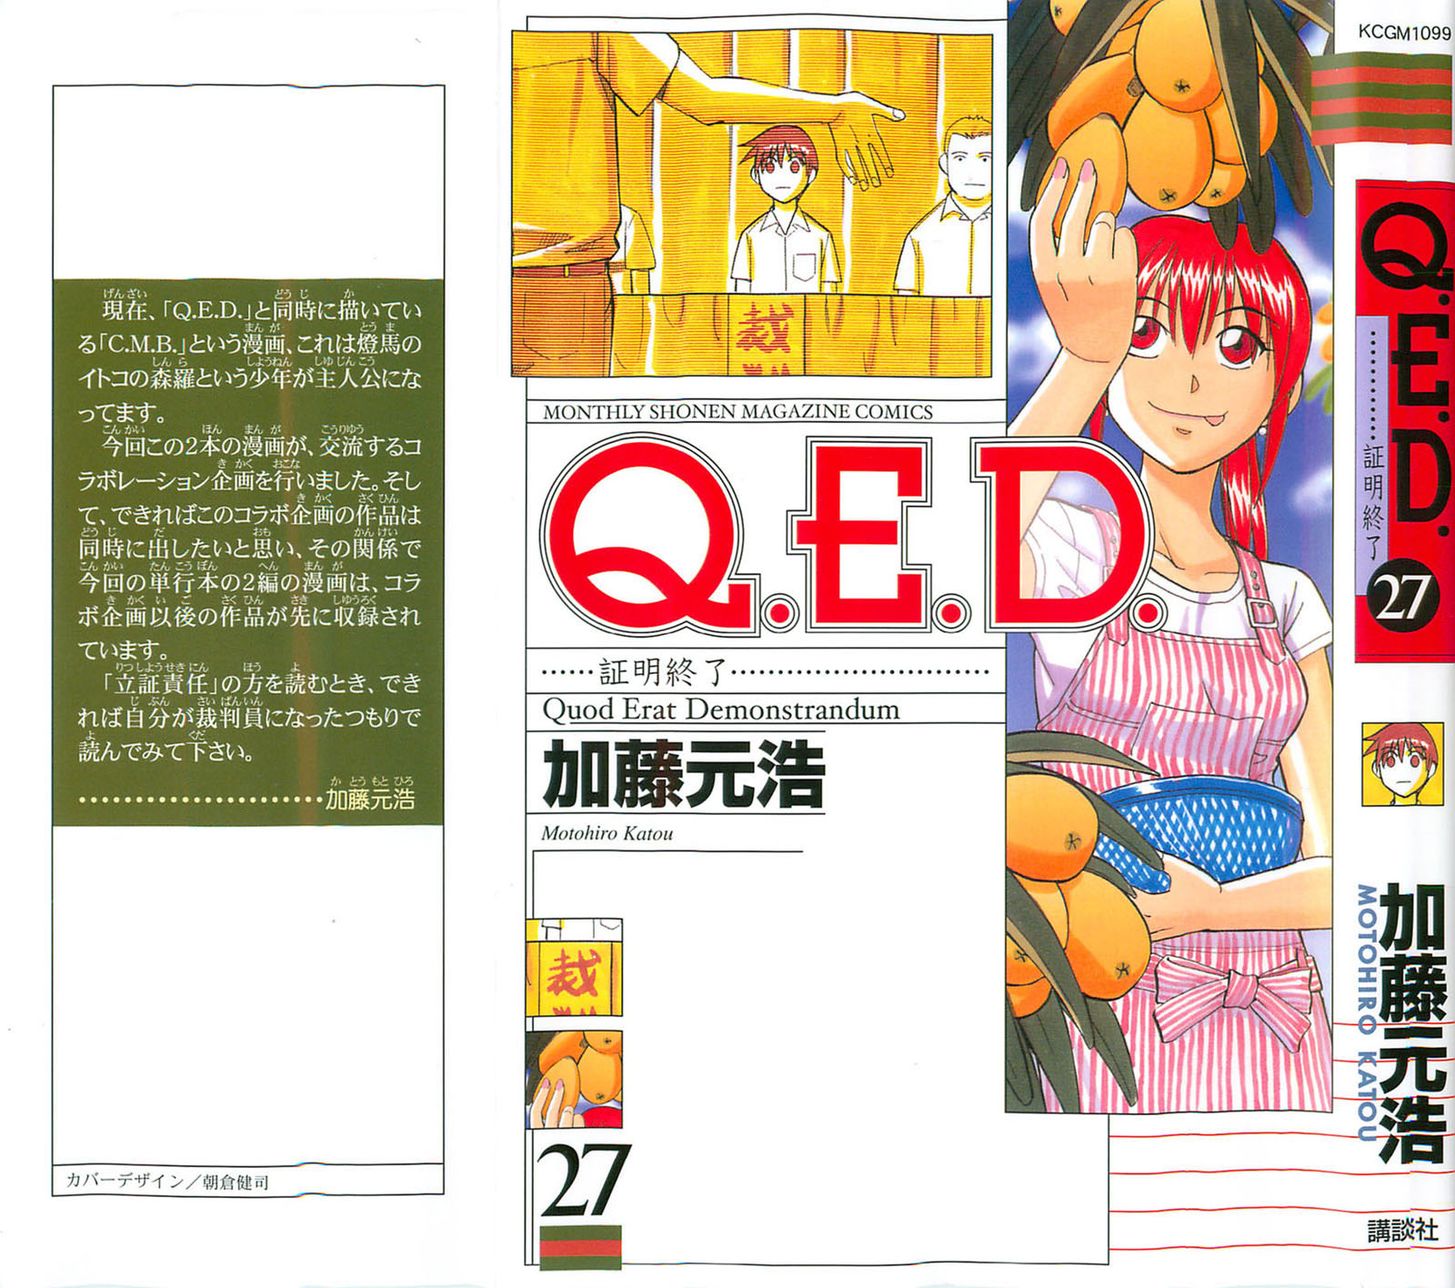 Q.E.D. - Shoumei Shuuryou 52.2